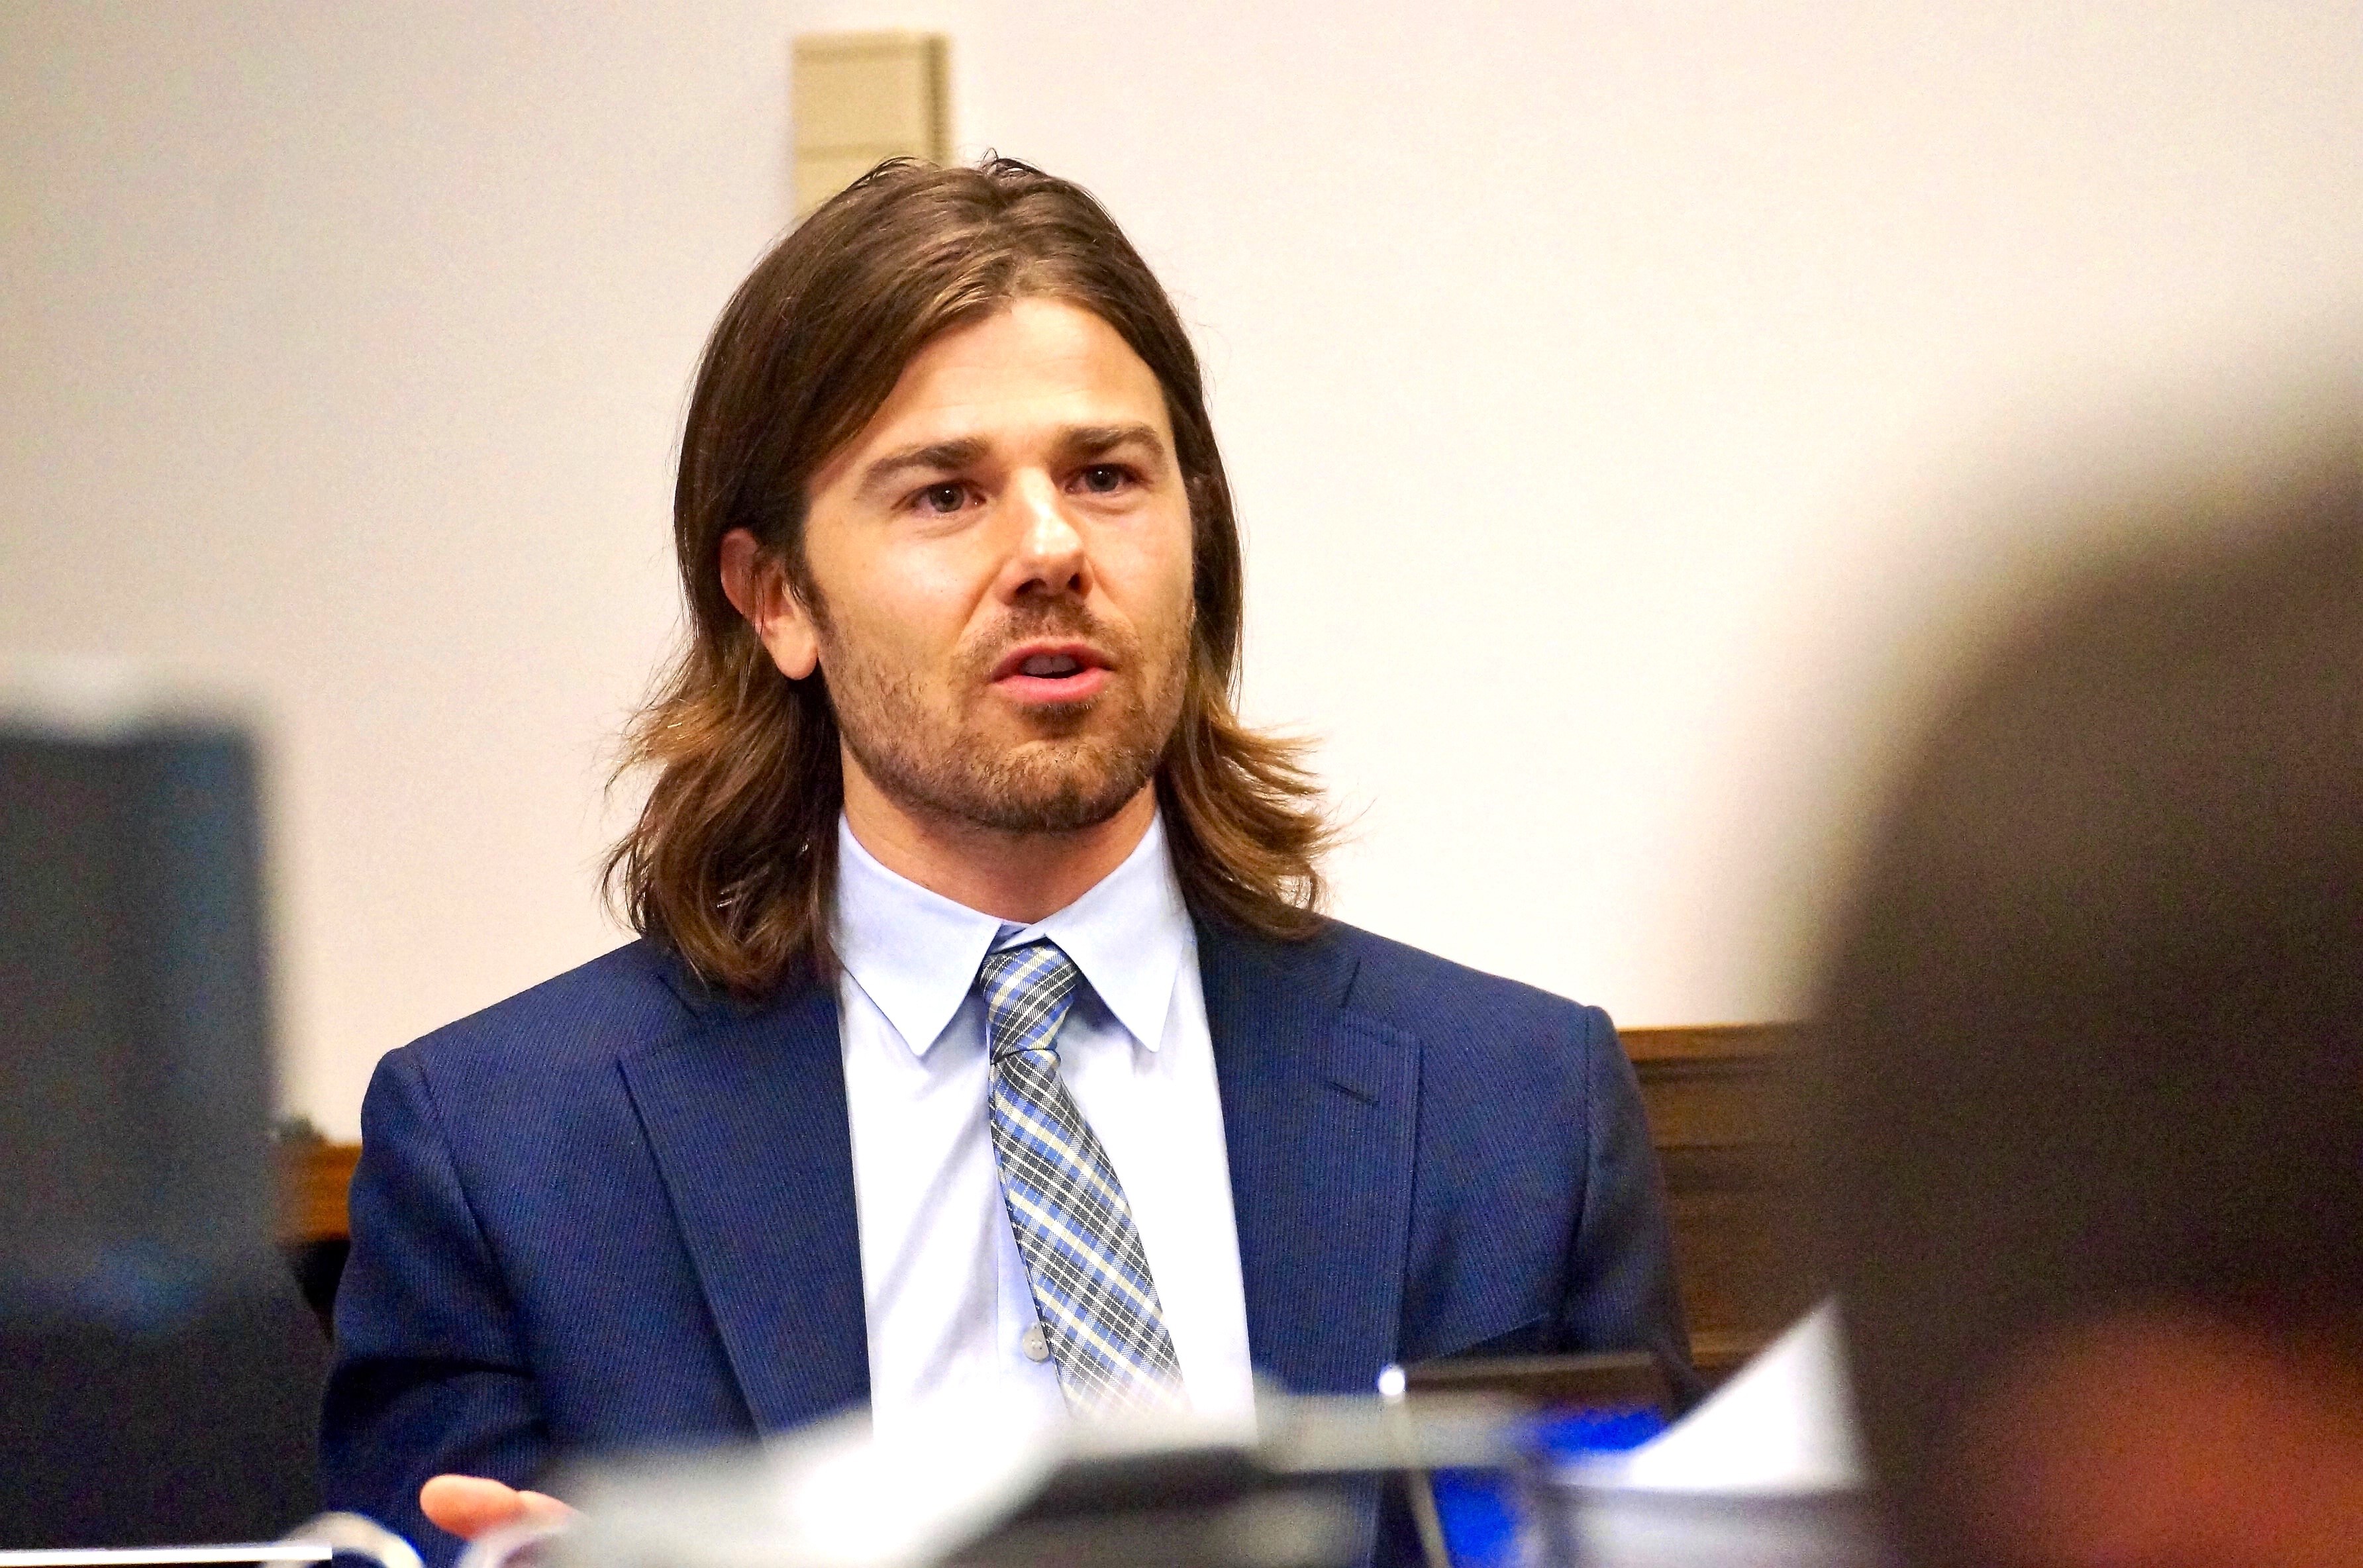 Dan Price during trial